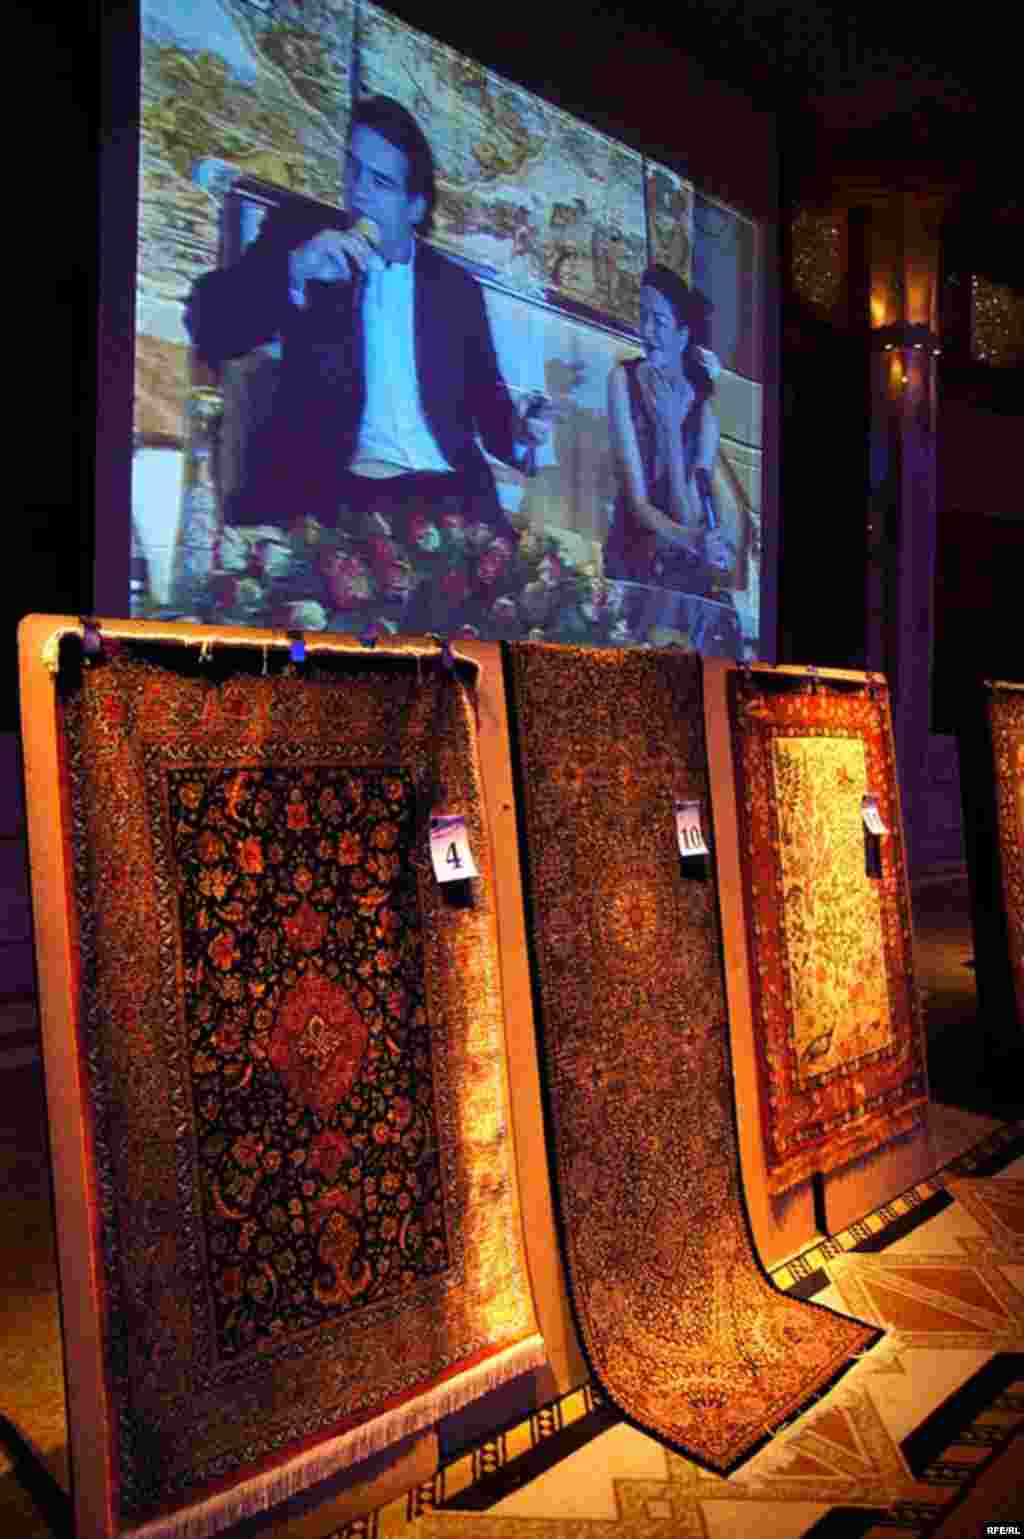 قطعه فرش هایی برای فروش و گردآوری کمک مالی برای ادامه راه ایرانیکا.